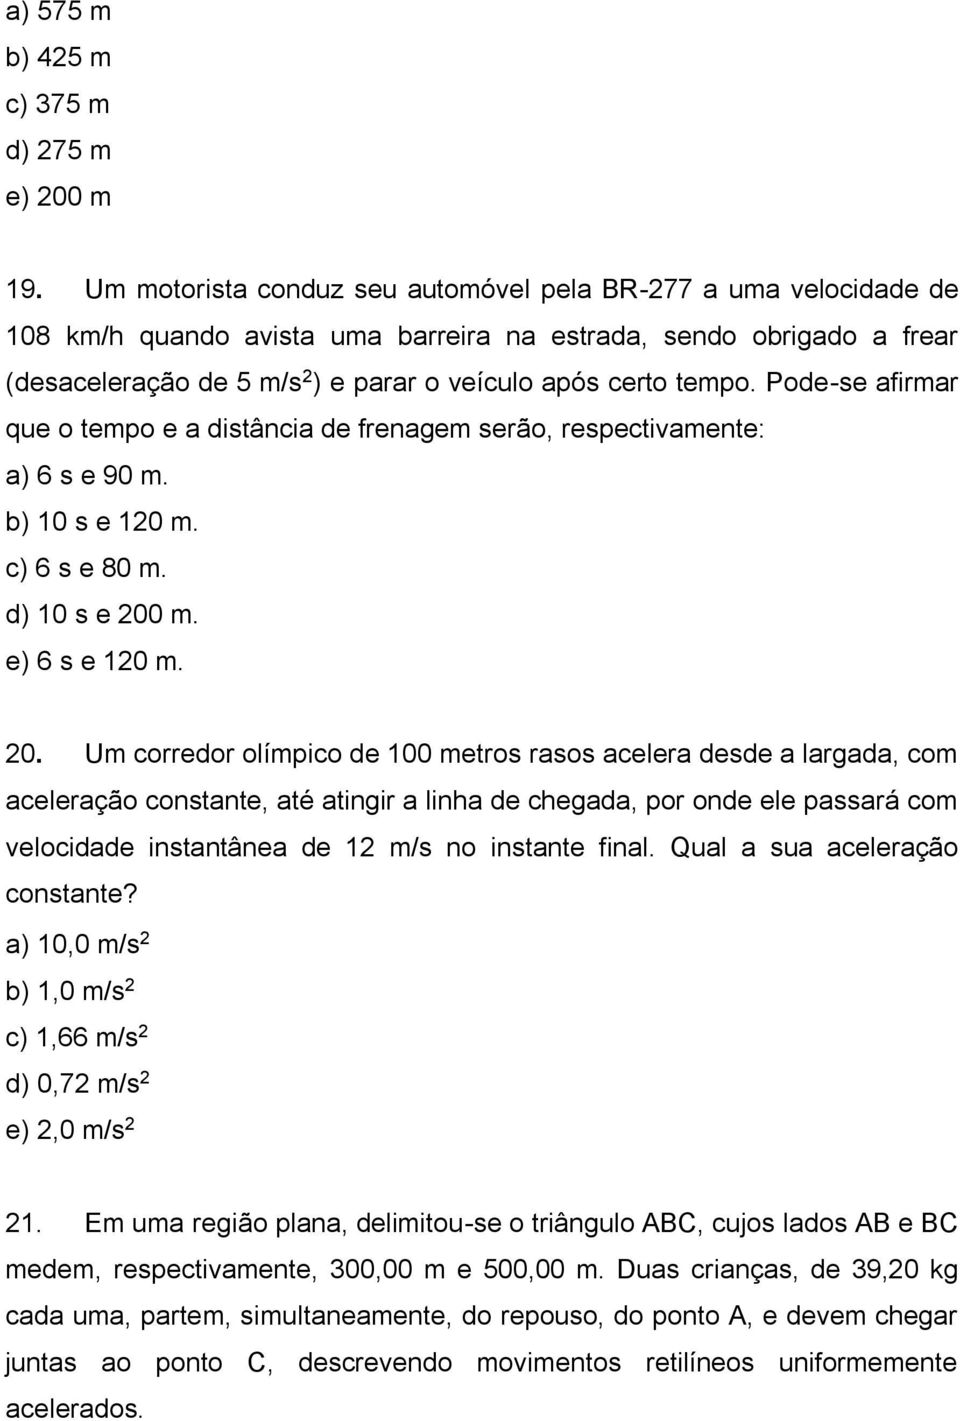 Pode-se afirmar que o tempo e a distância de frenagem serão, respectivamente: a) 6 s e 90 m. b) 10 s e 120 m. c) 6 s e 80 m. d) 10 s e 200